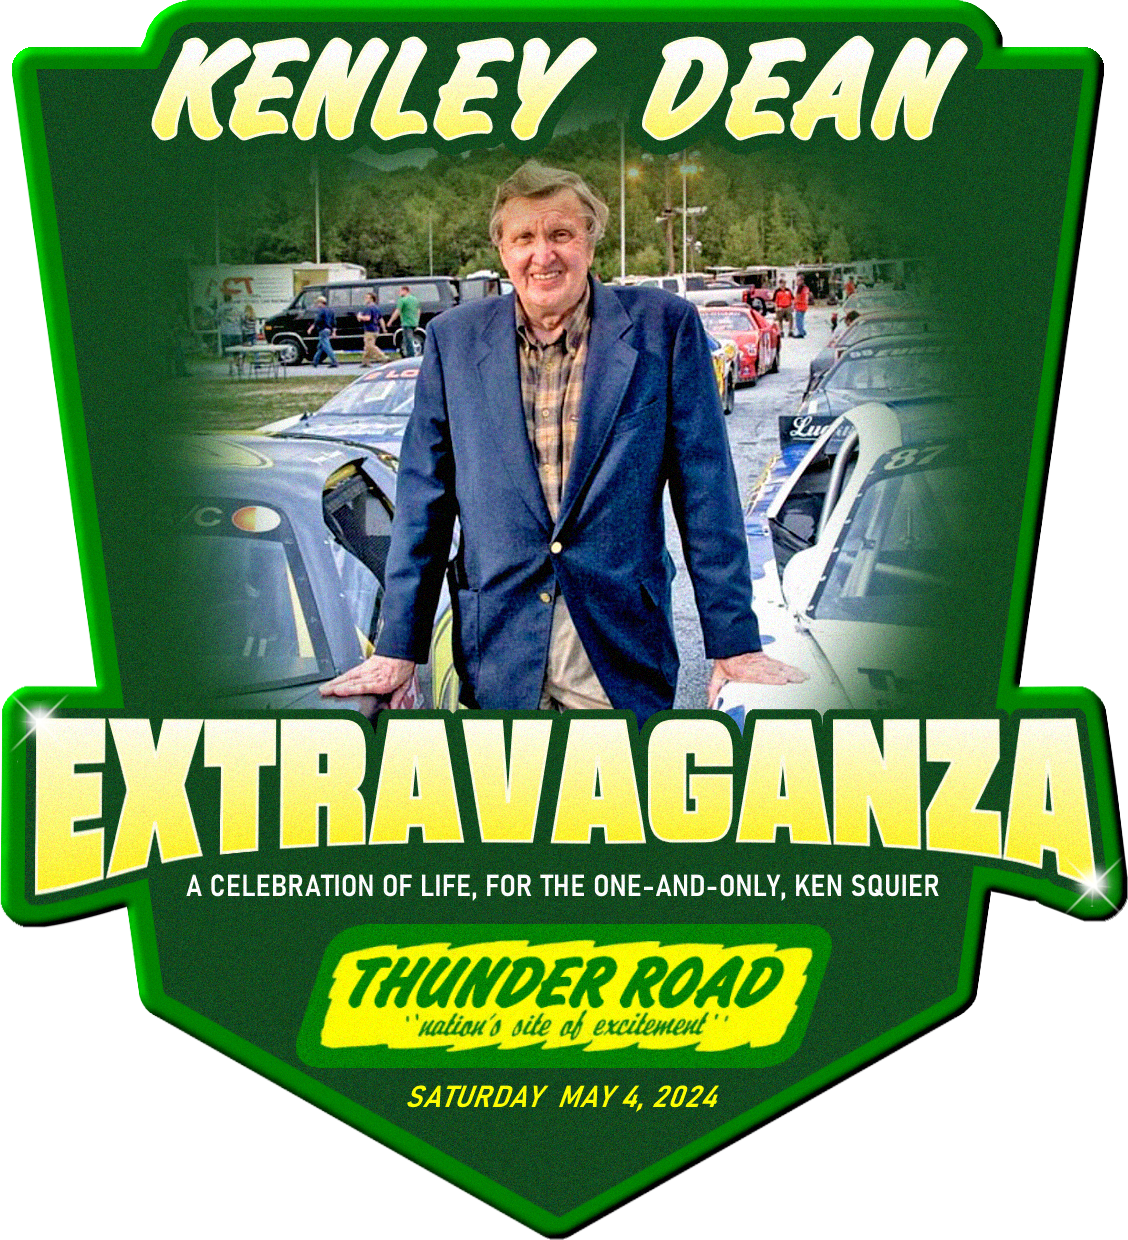 Kenley Dean Extravaganza – The Ken Squier Celebration of Life